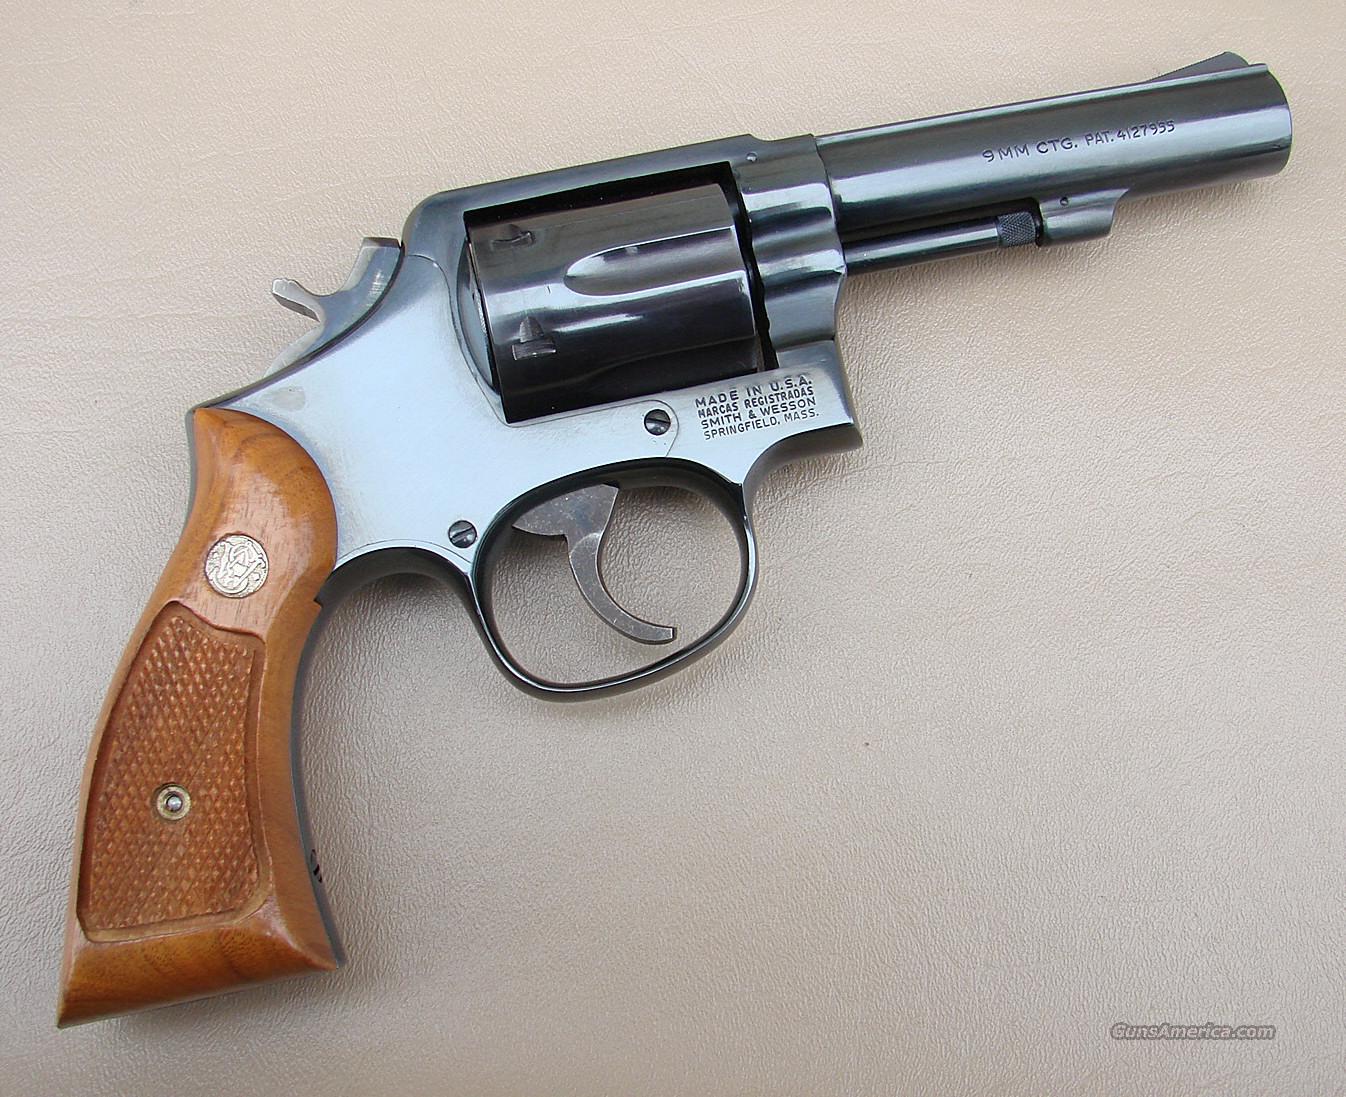 Smith & Wesson Model 547 9 M/M Revo... for sale at Gunsamerica.com ...